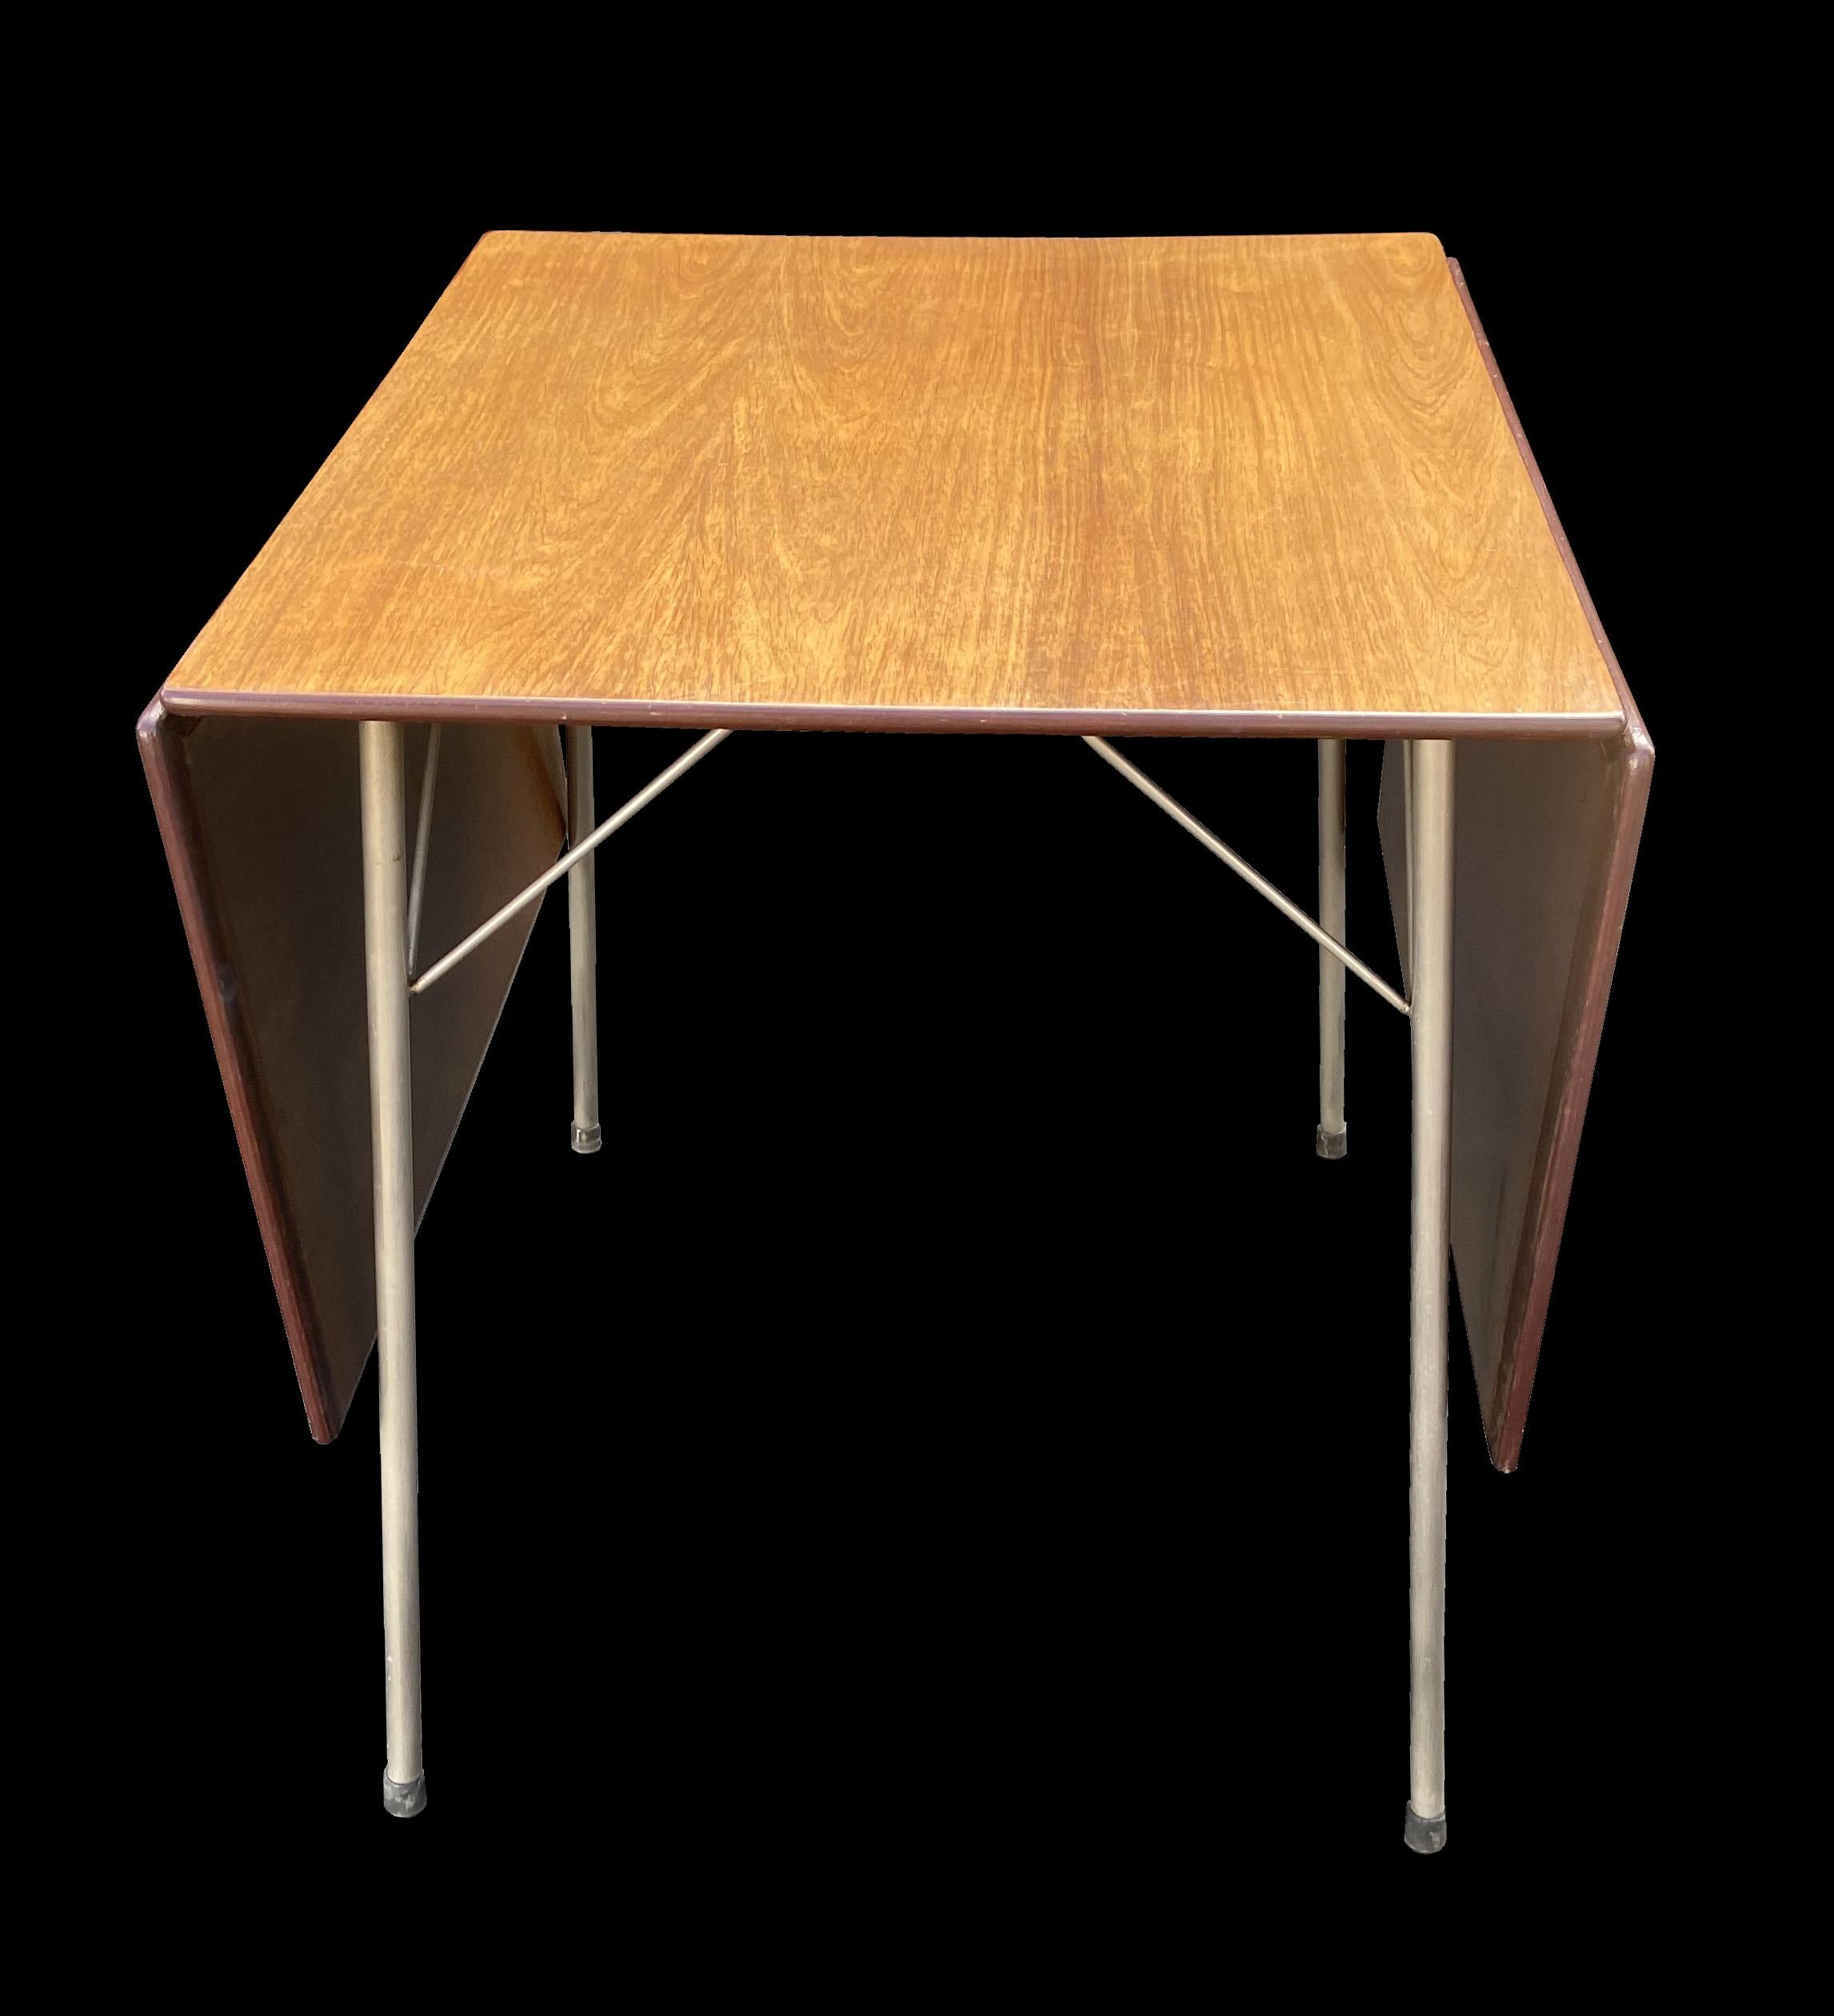 Il s'agit d'un excellent exemple original et intact de cette table à manger à rallonge conçue par Arne Jacobsen. Le plateau a une magnifique patine et le bois de rose s'est joliment et uniformément décoloré jusqu'à atteindre une très belle couleur